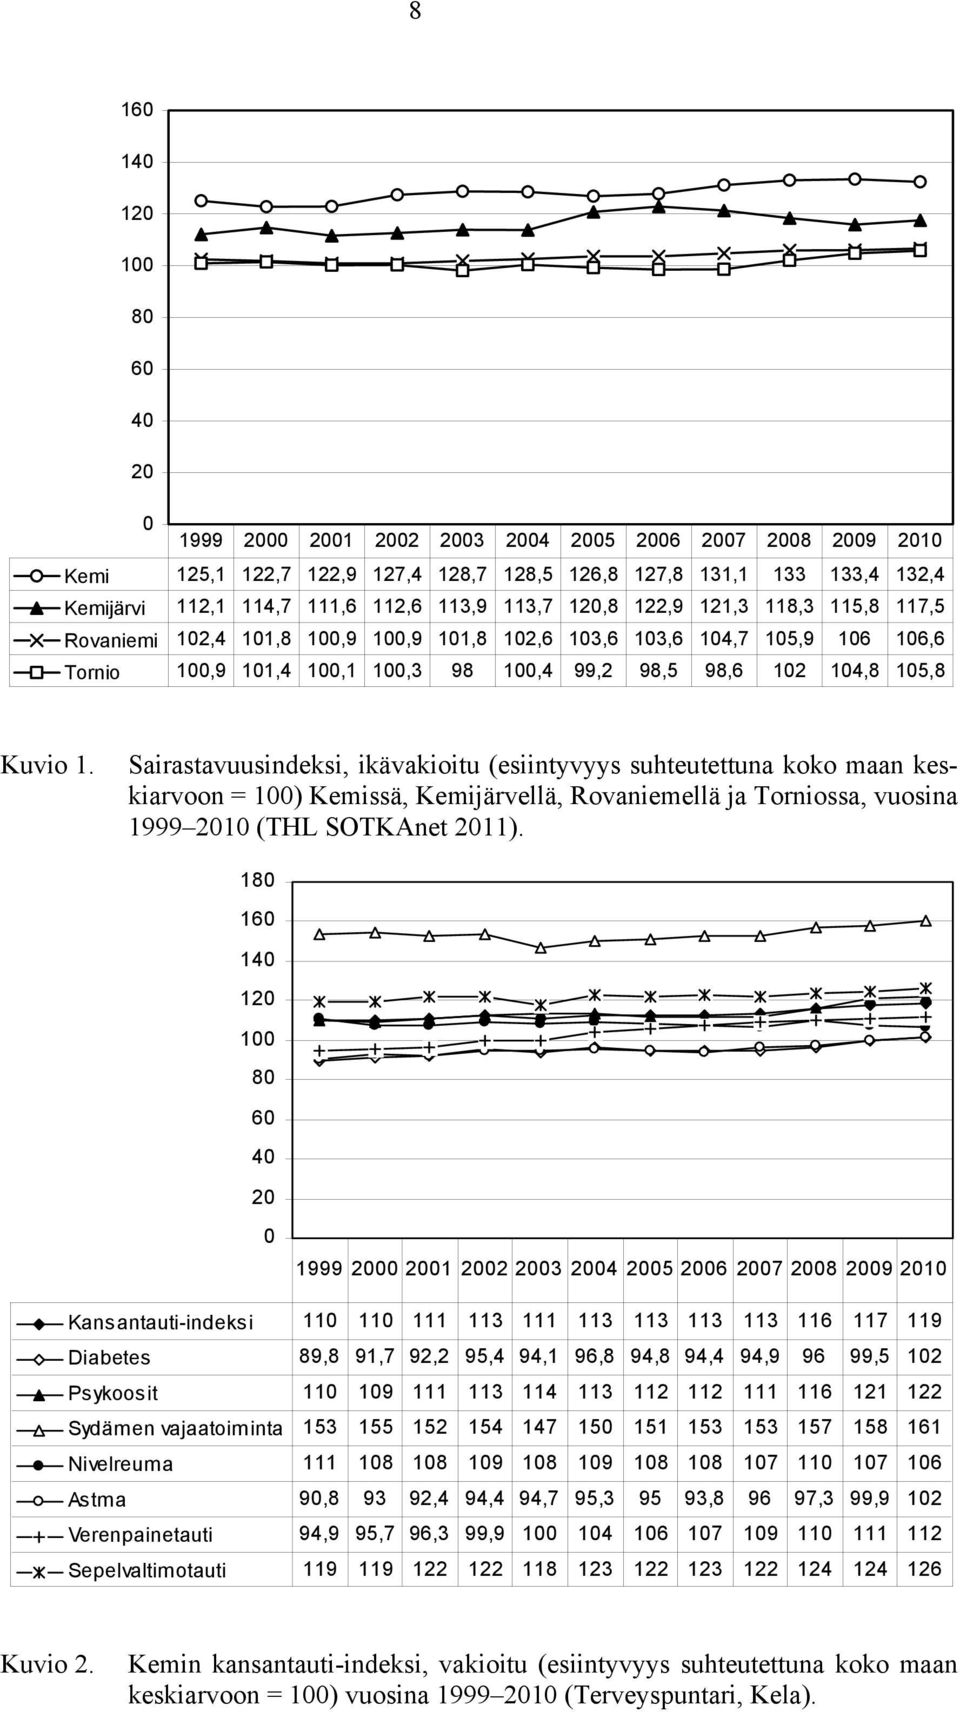 105,8 Kuvio 1. Sairastavuusindeksi, ikävakioitu (esiintyvyys suhteutettuna koko maan keskiarvoon = 100) Kemissä, Kemijärvellä, Rovaniemellä ja Torniossa, vuosina 1999 2010 (THL SOTKAnet 2011).